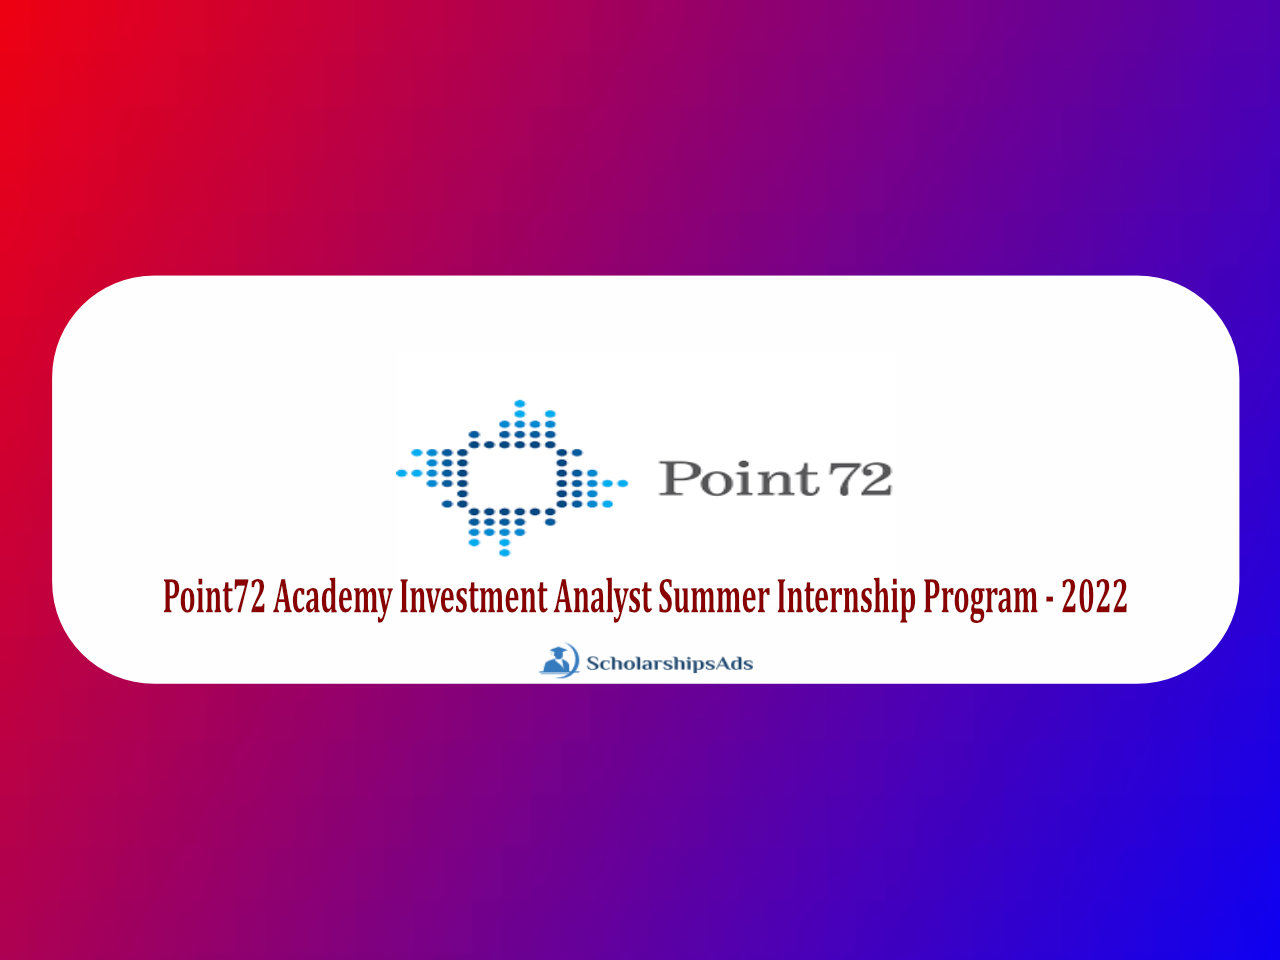 Point72 Academy Investment Analyst Summer Internship Program 2022